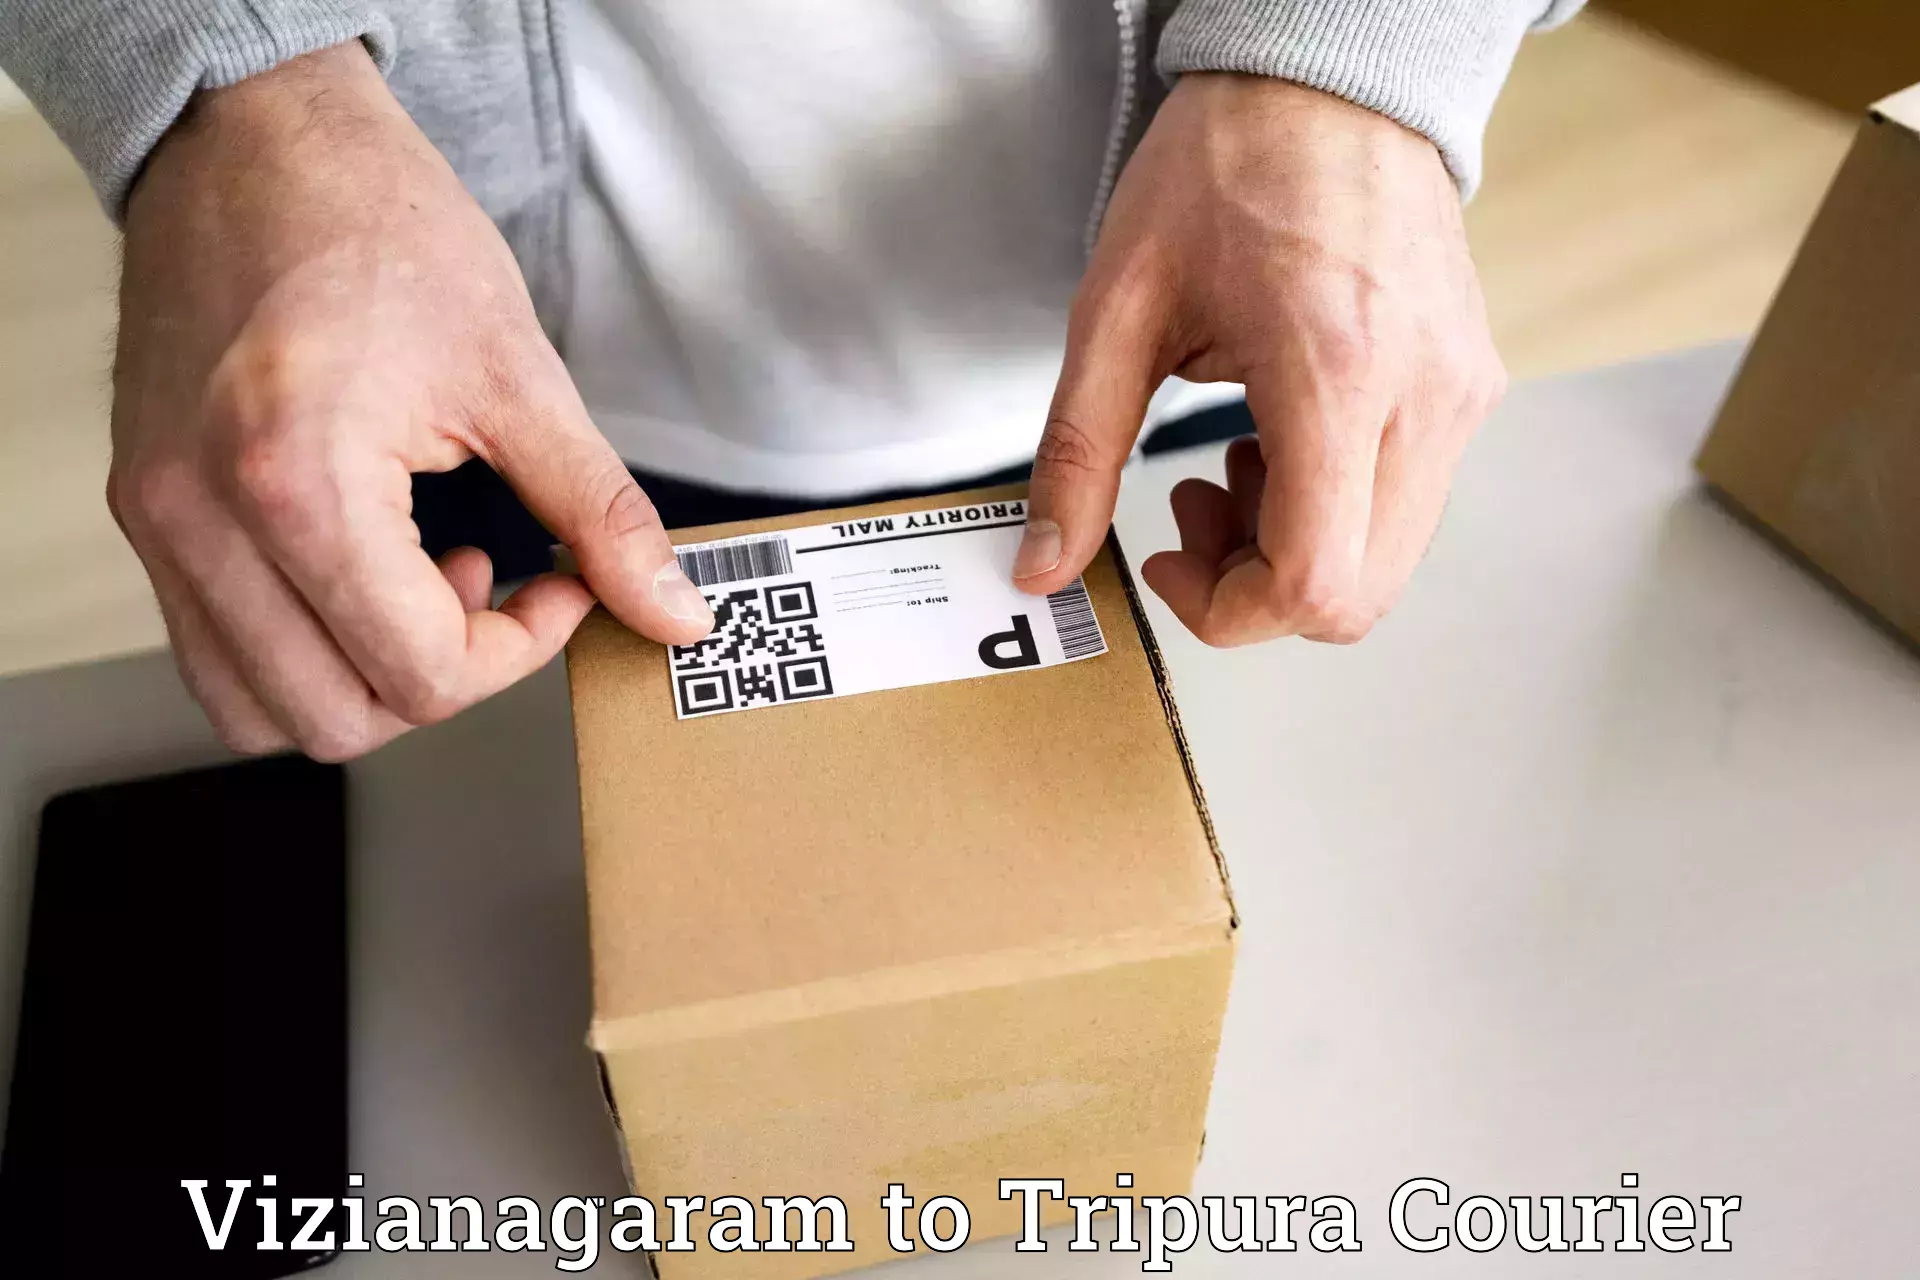 User-friendly courier app Vizianagaram to Tripura